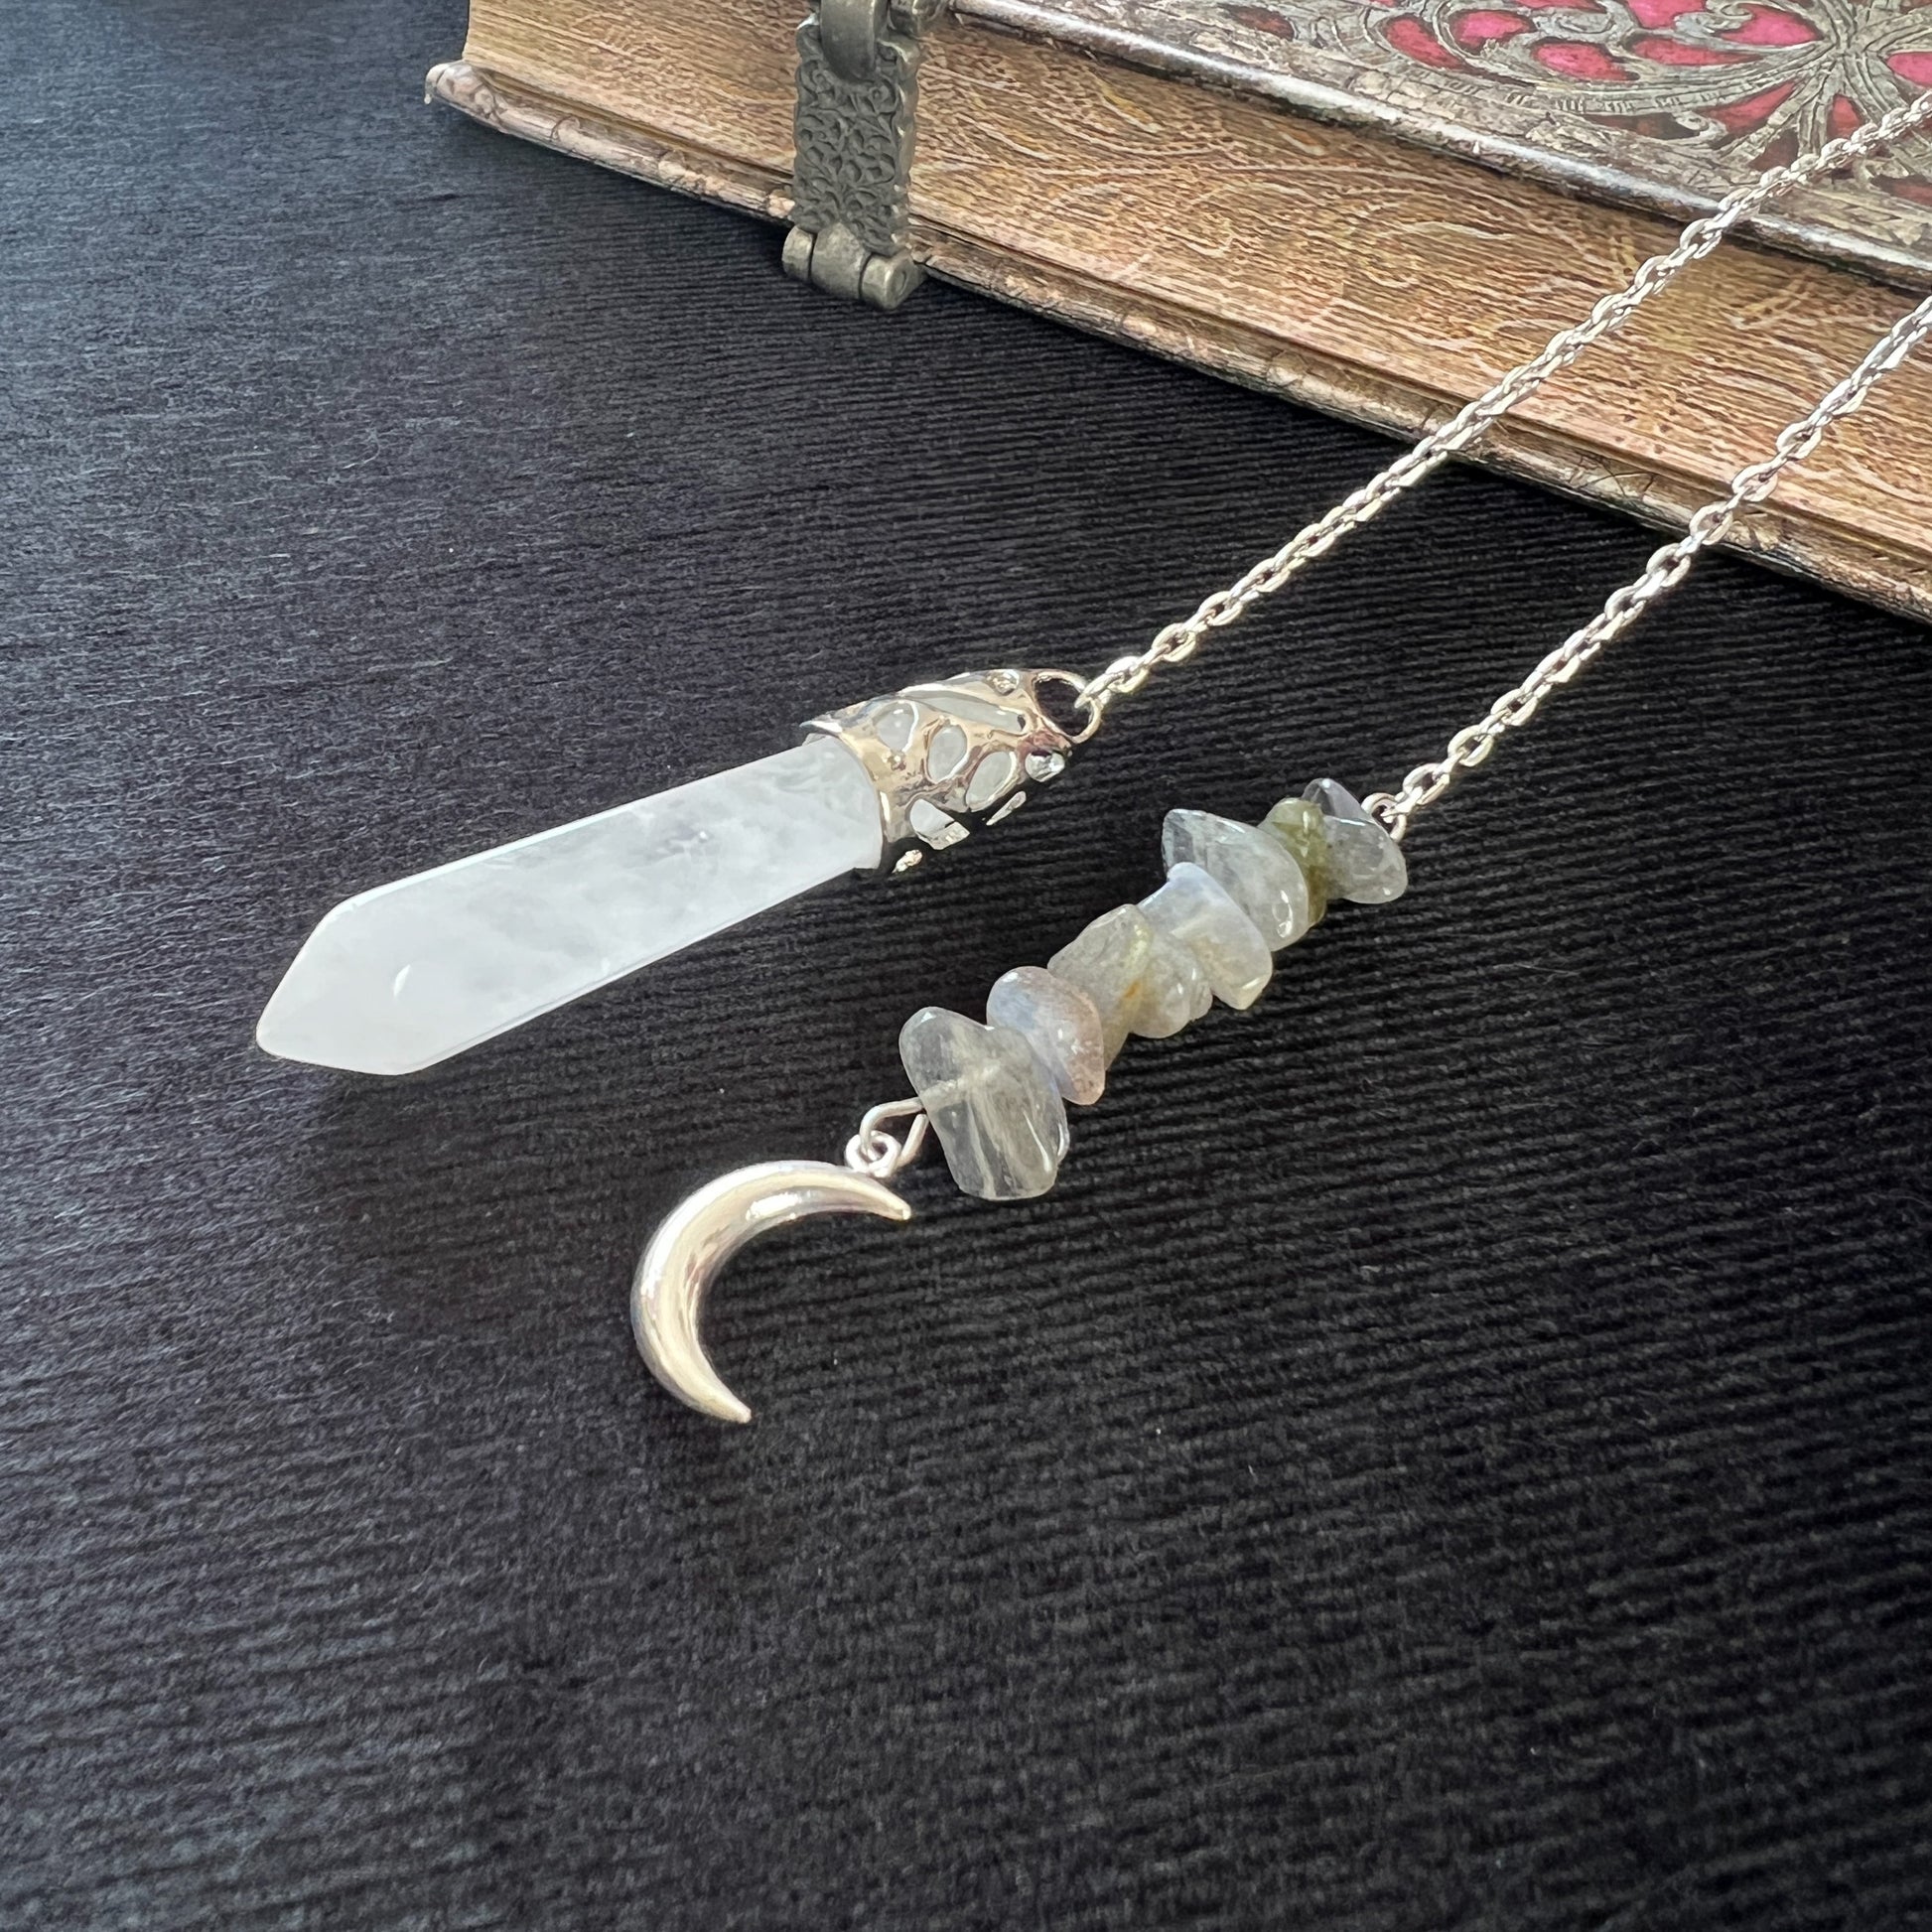 Gemstone pendulum quartz and labradorite Moon crescent dowsing divination tool for witchcraft fortune telling